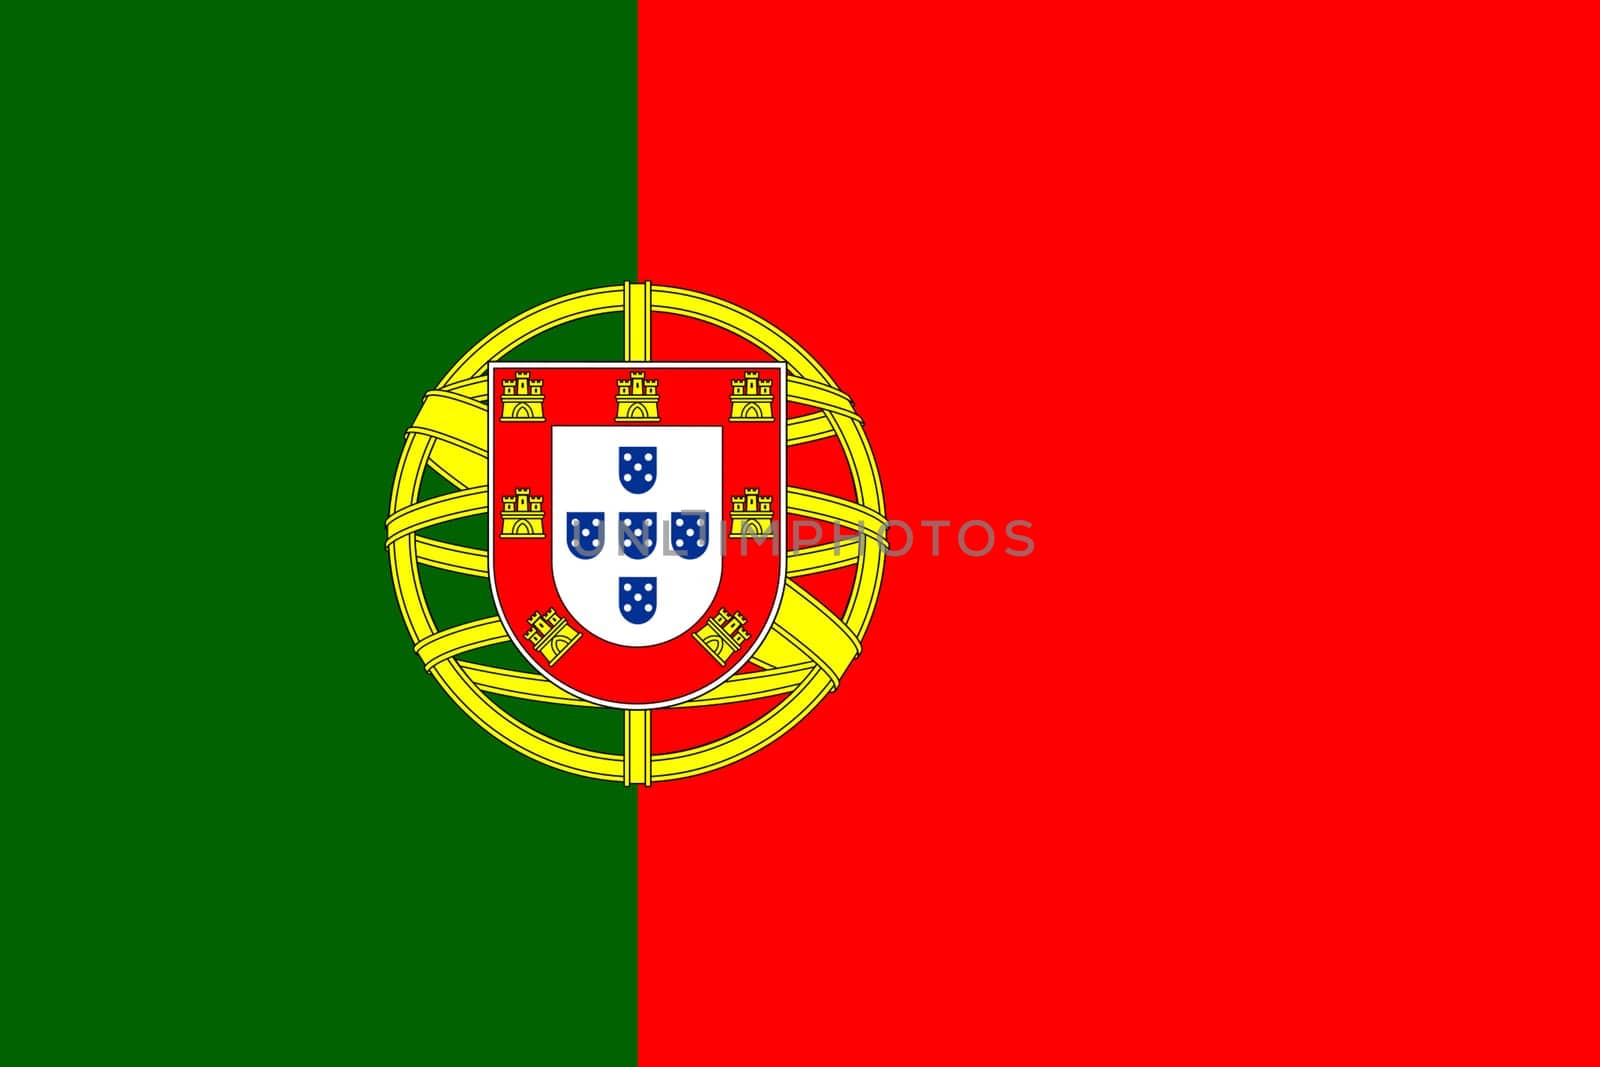 A Portugal flag background 2D illustration